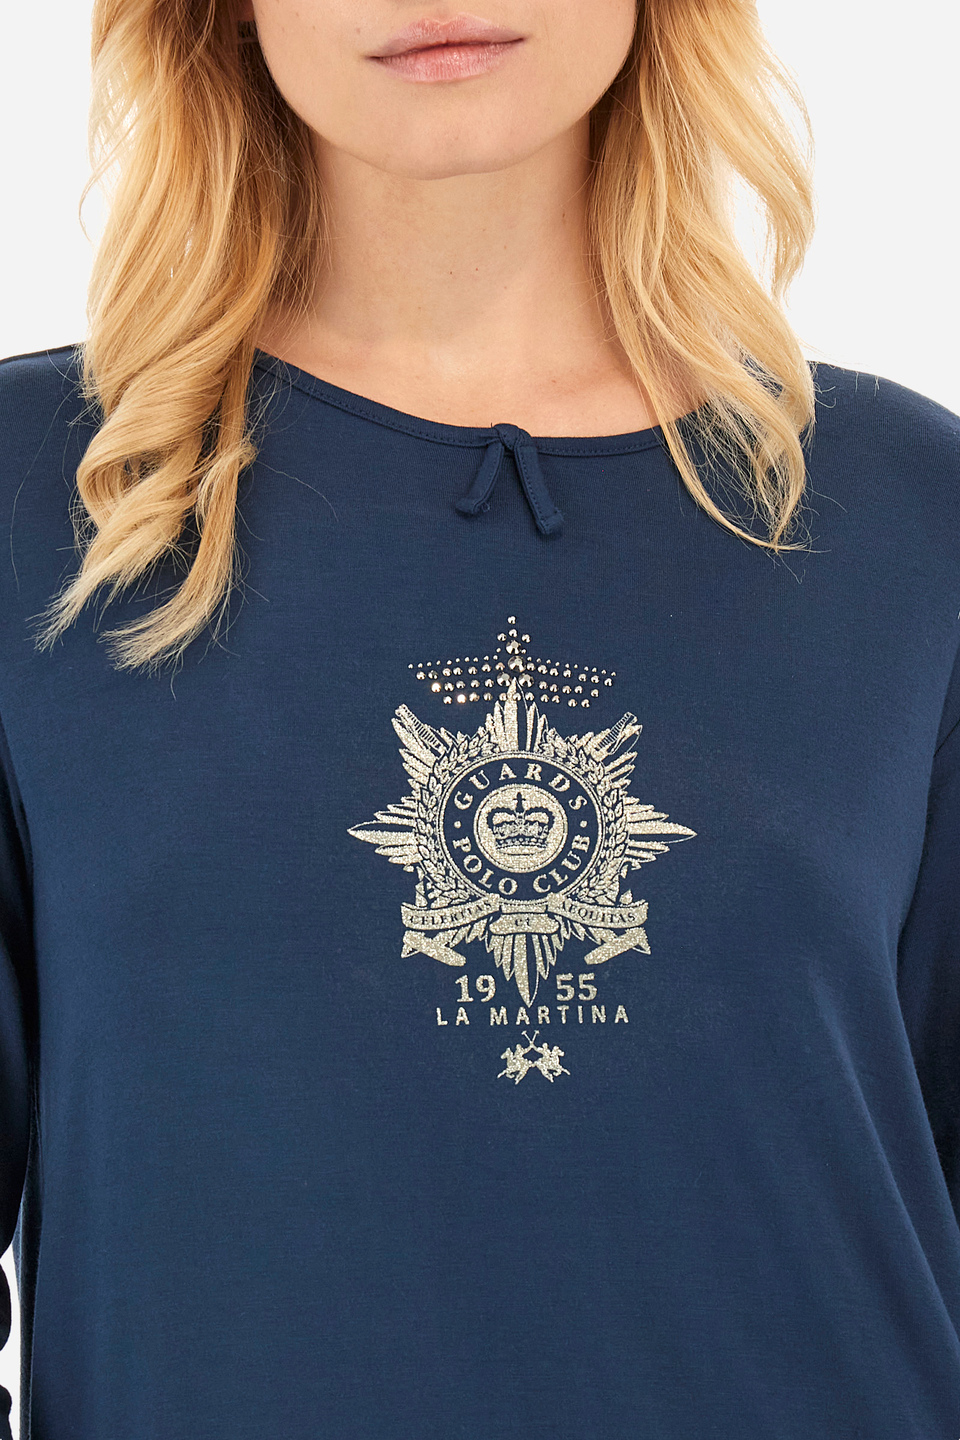 Damen -T -Shirt regular fit - Wyetta | La Martina - Official Online Shop